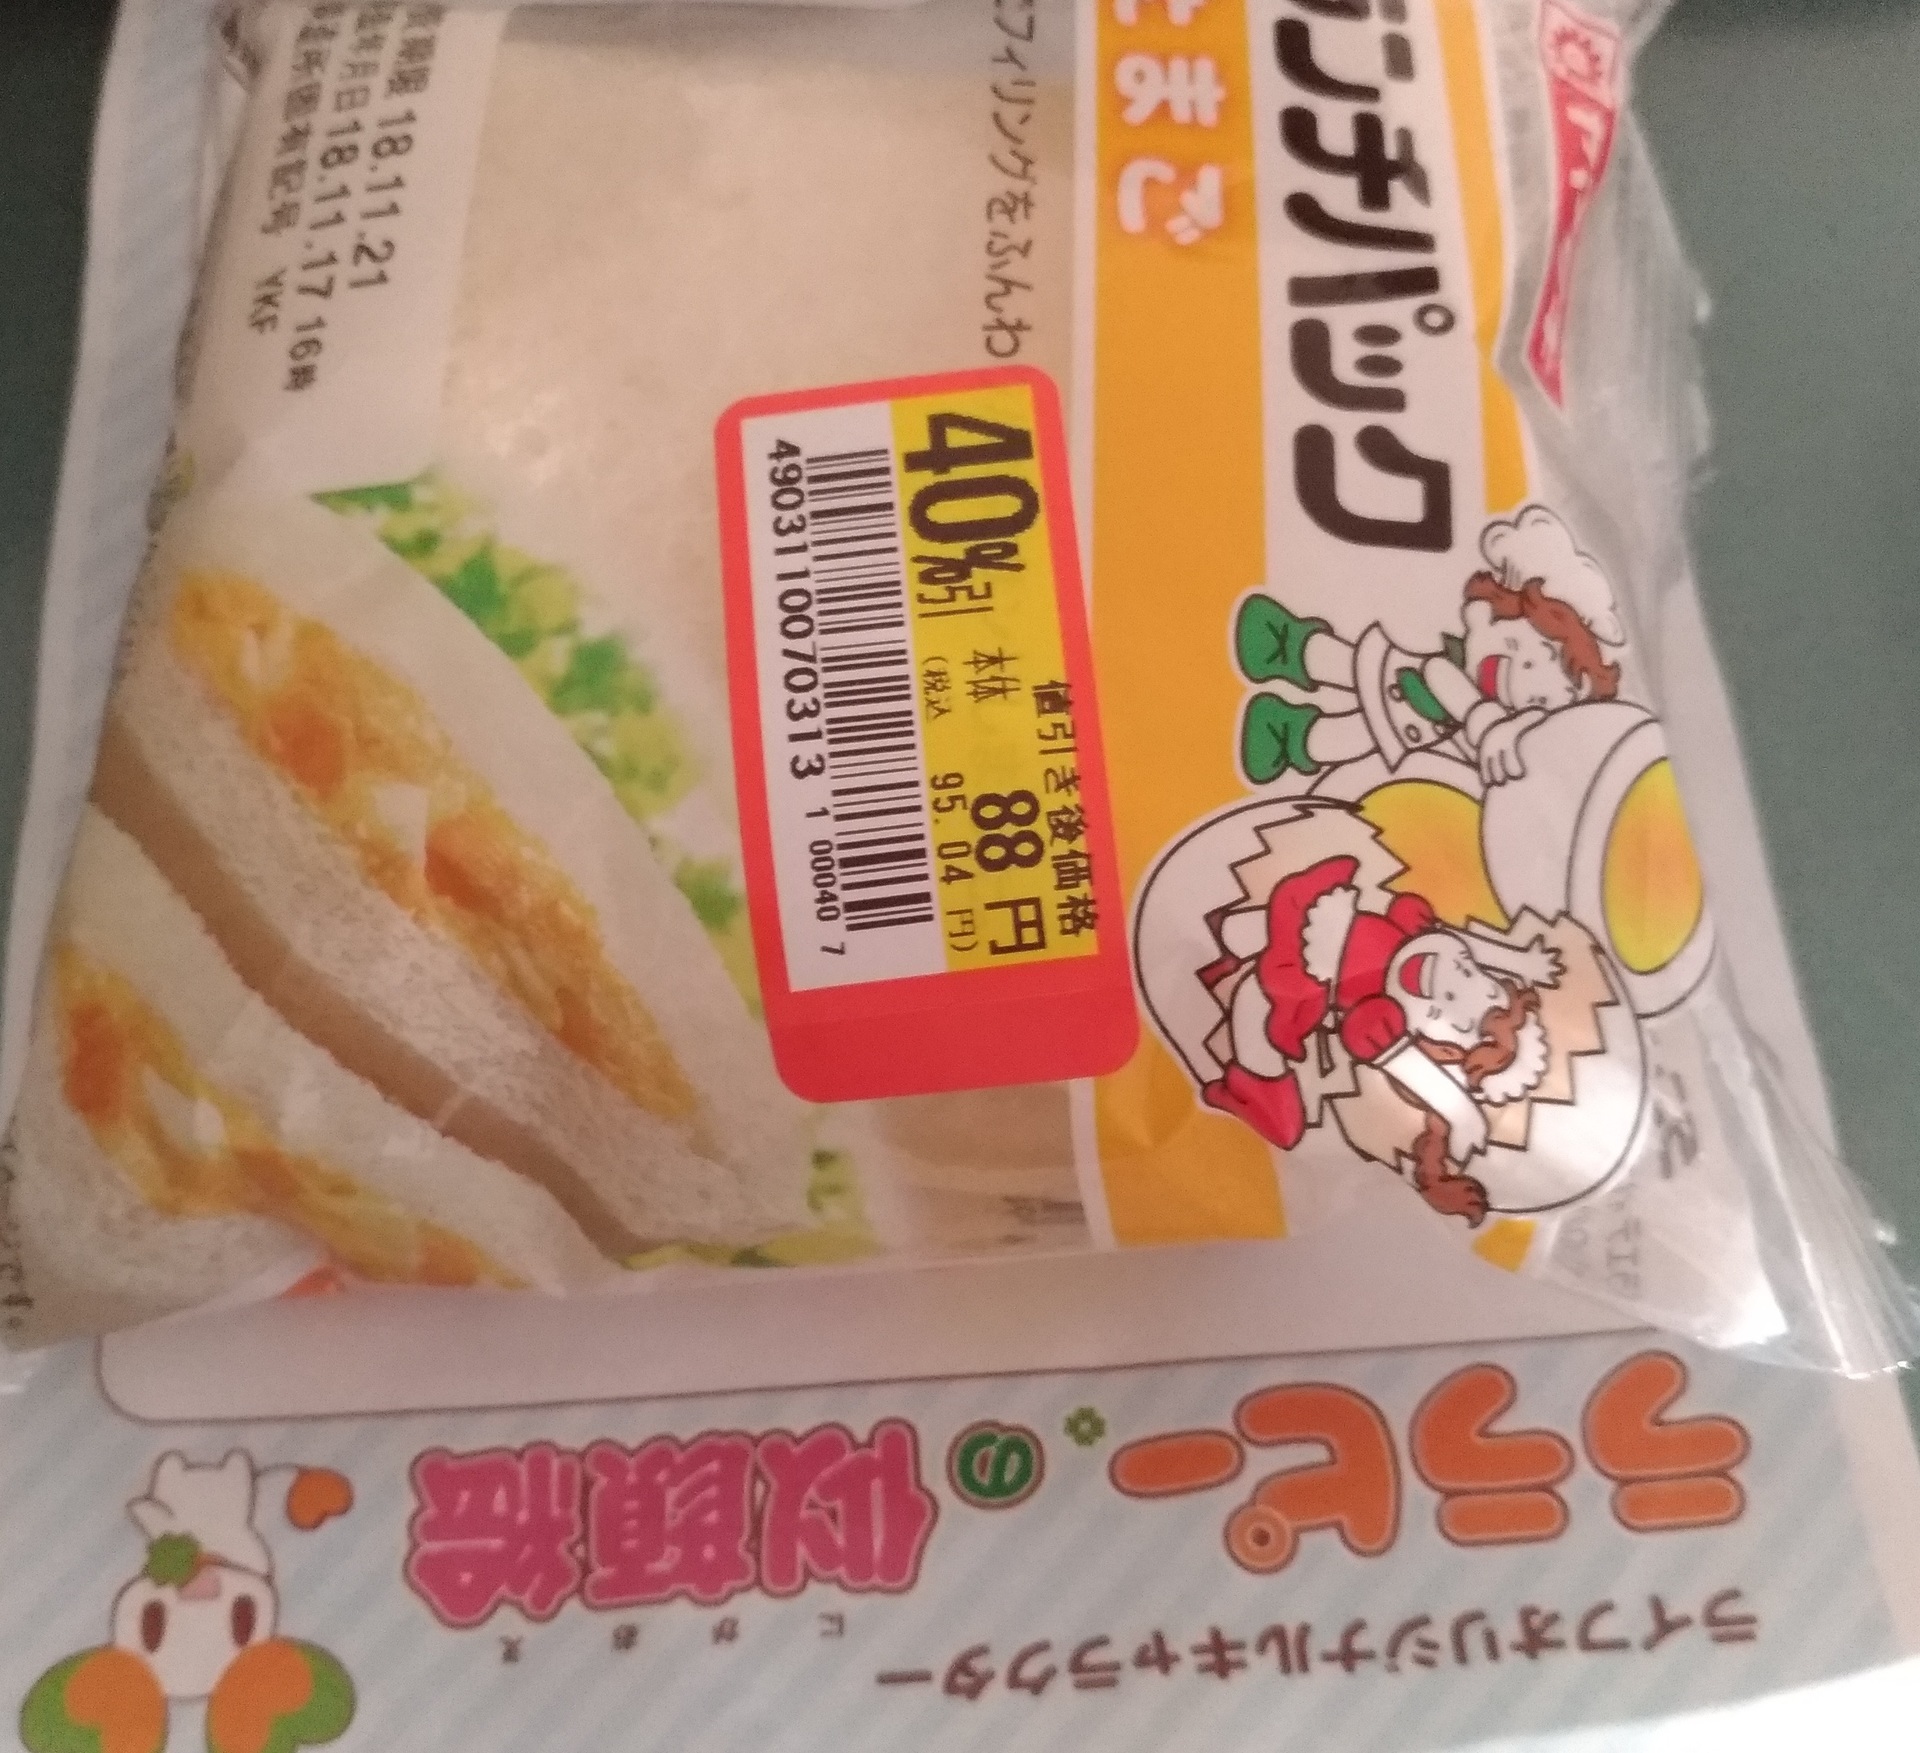 ヤマザキランチパック値段 高い 値引き95円スーパーライフで スーパーライフ 大阪おすすめお惣菜野菜をブログでポイントも